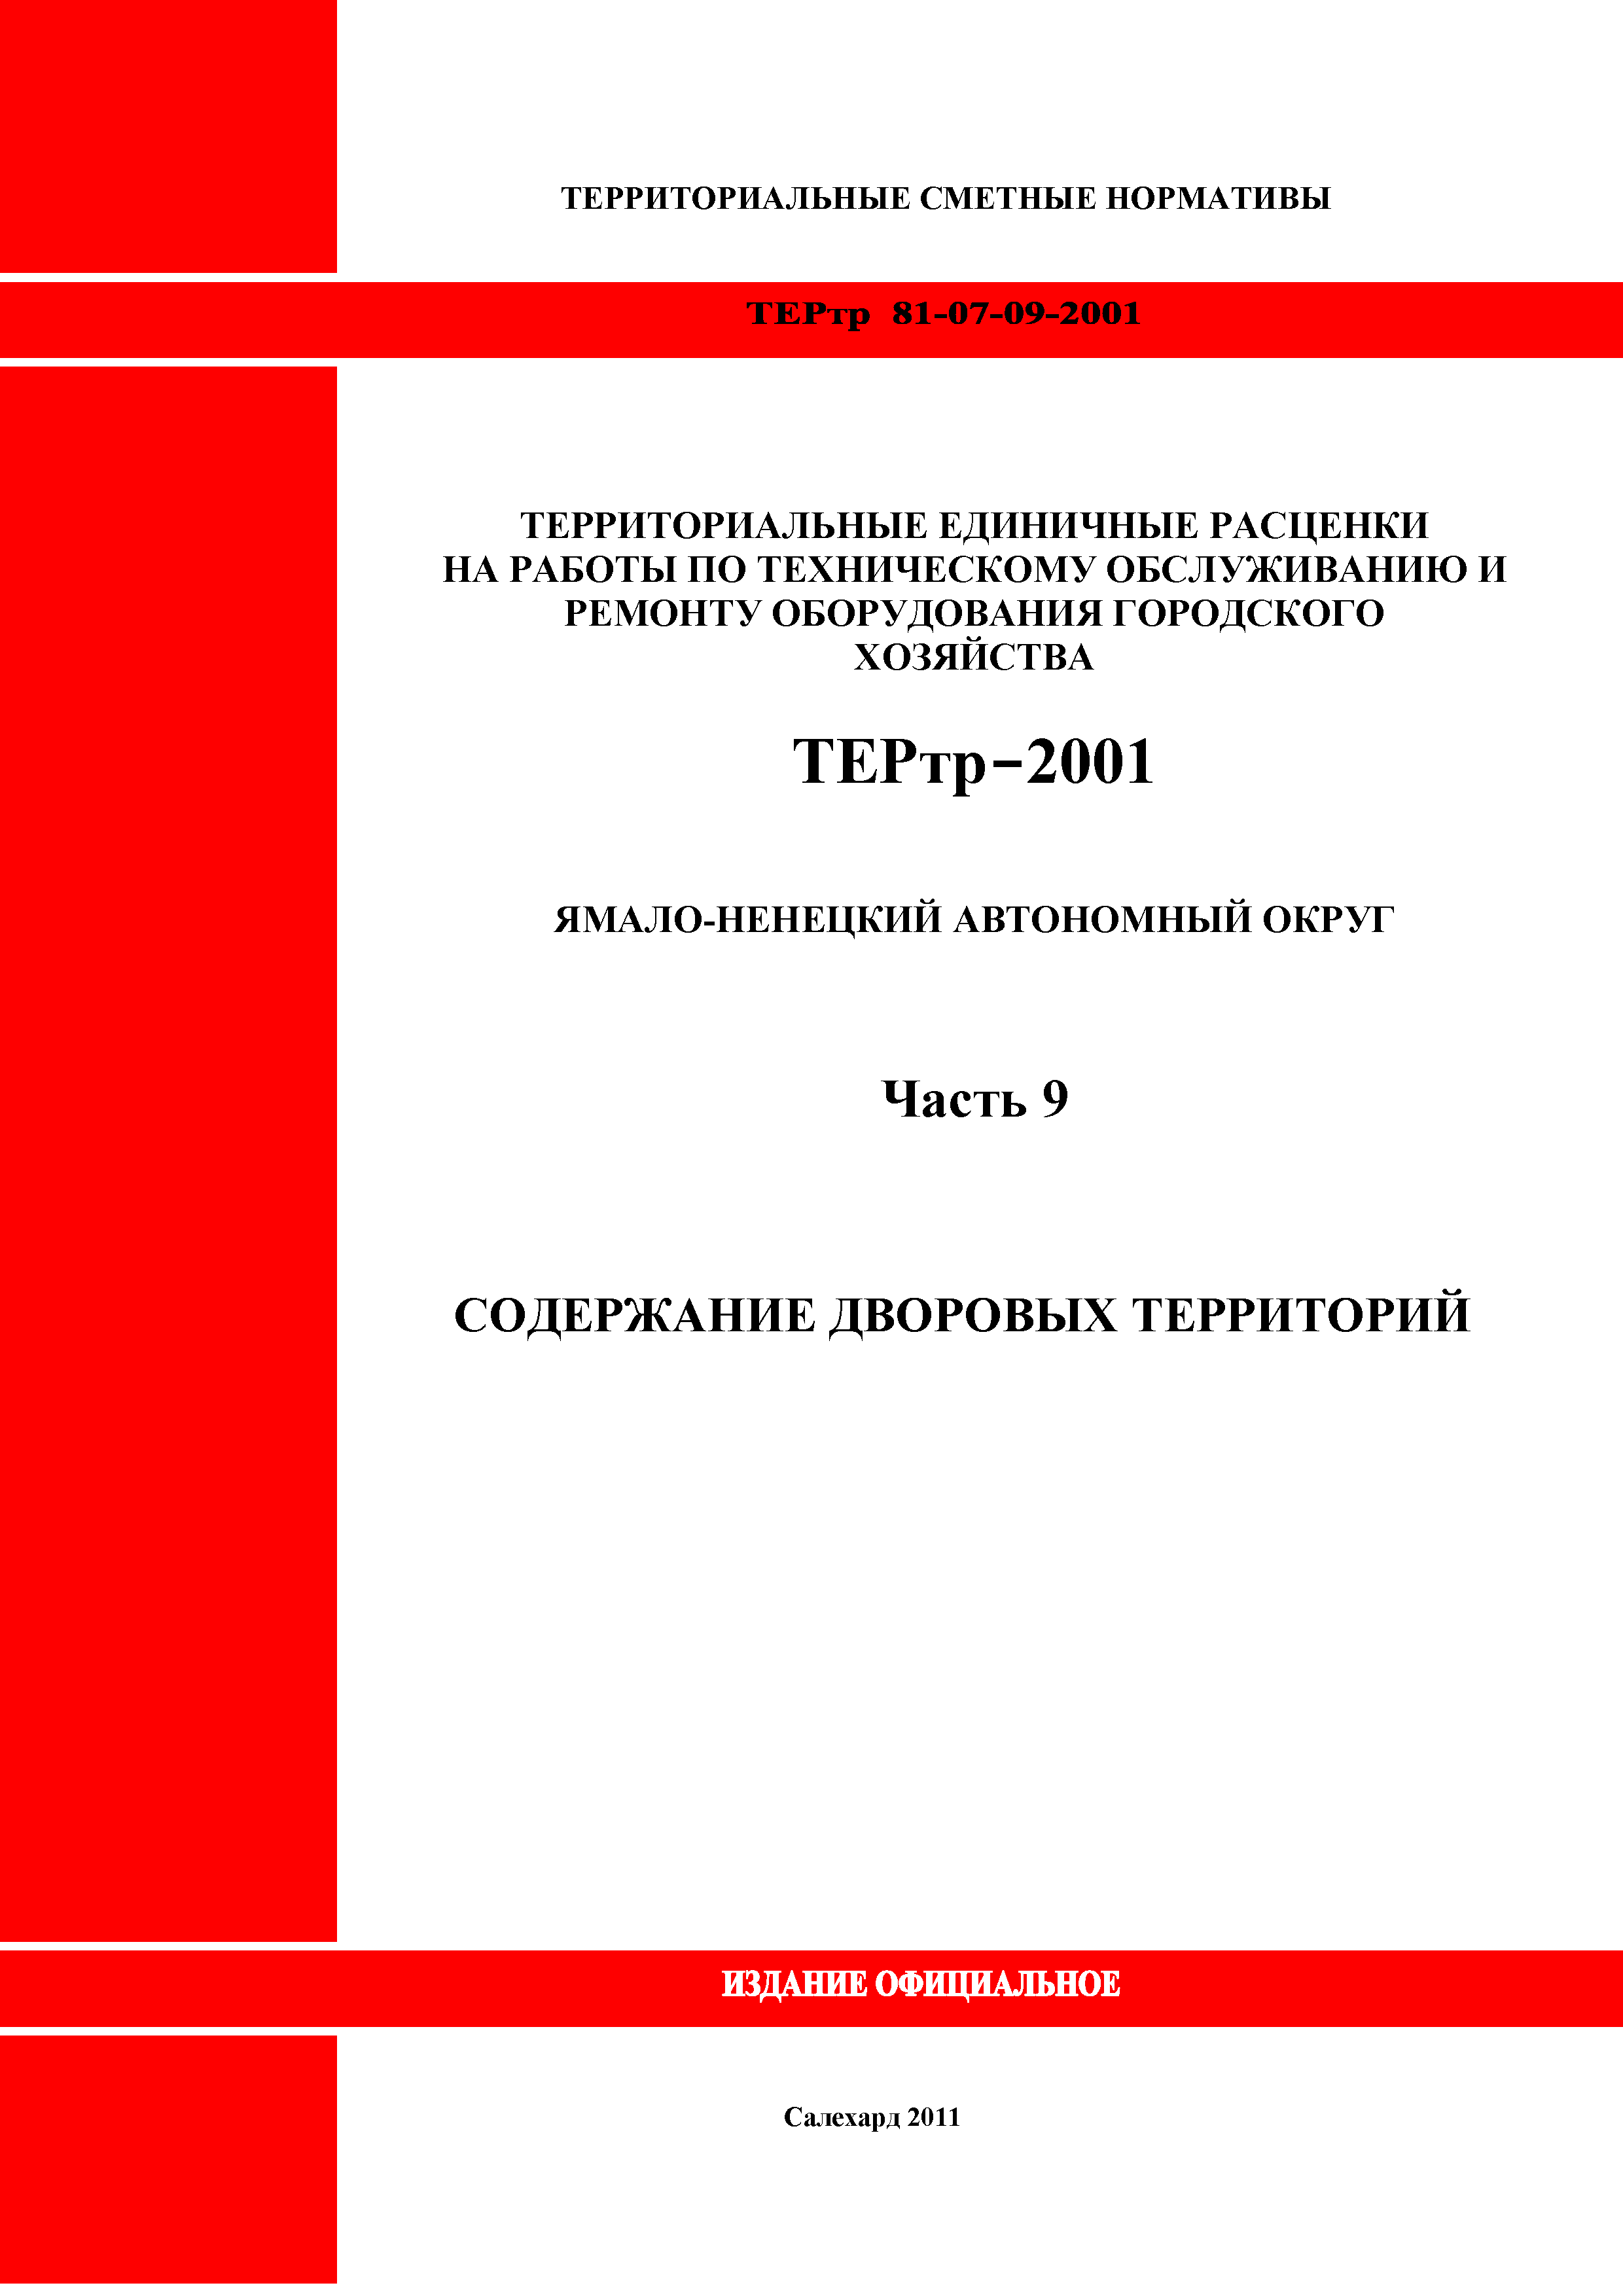 ТЕРтр Ямало-Ненецкий автономный округ 09-2001